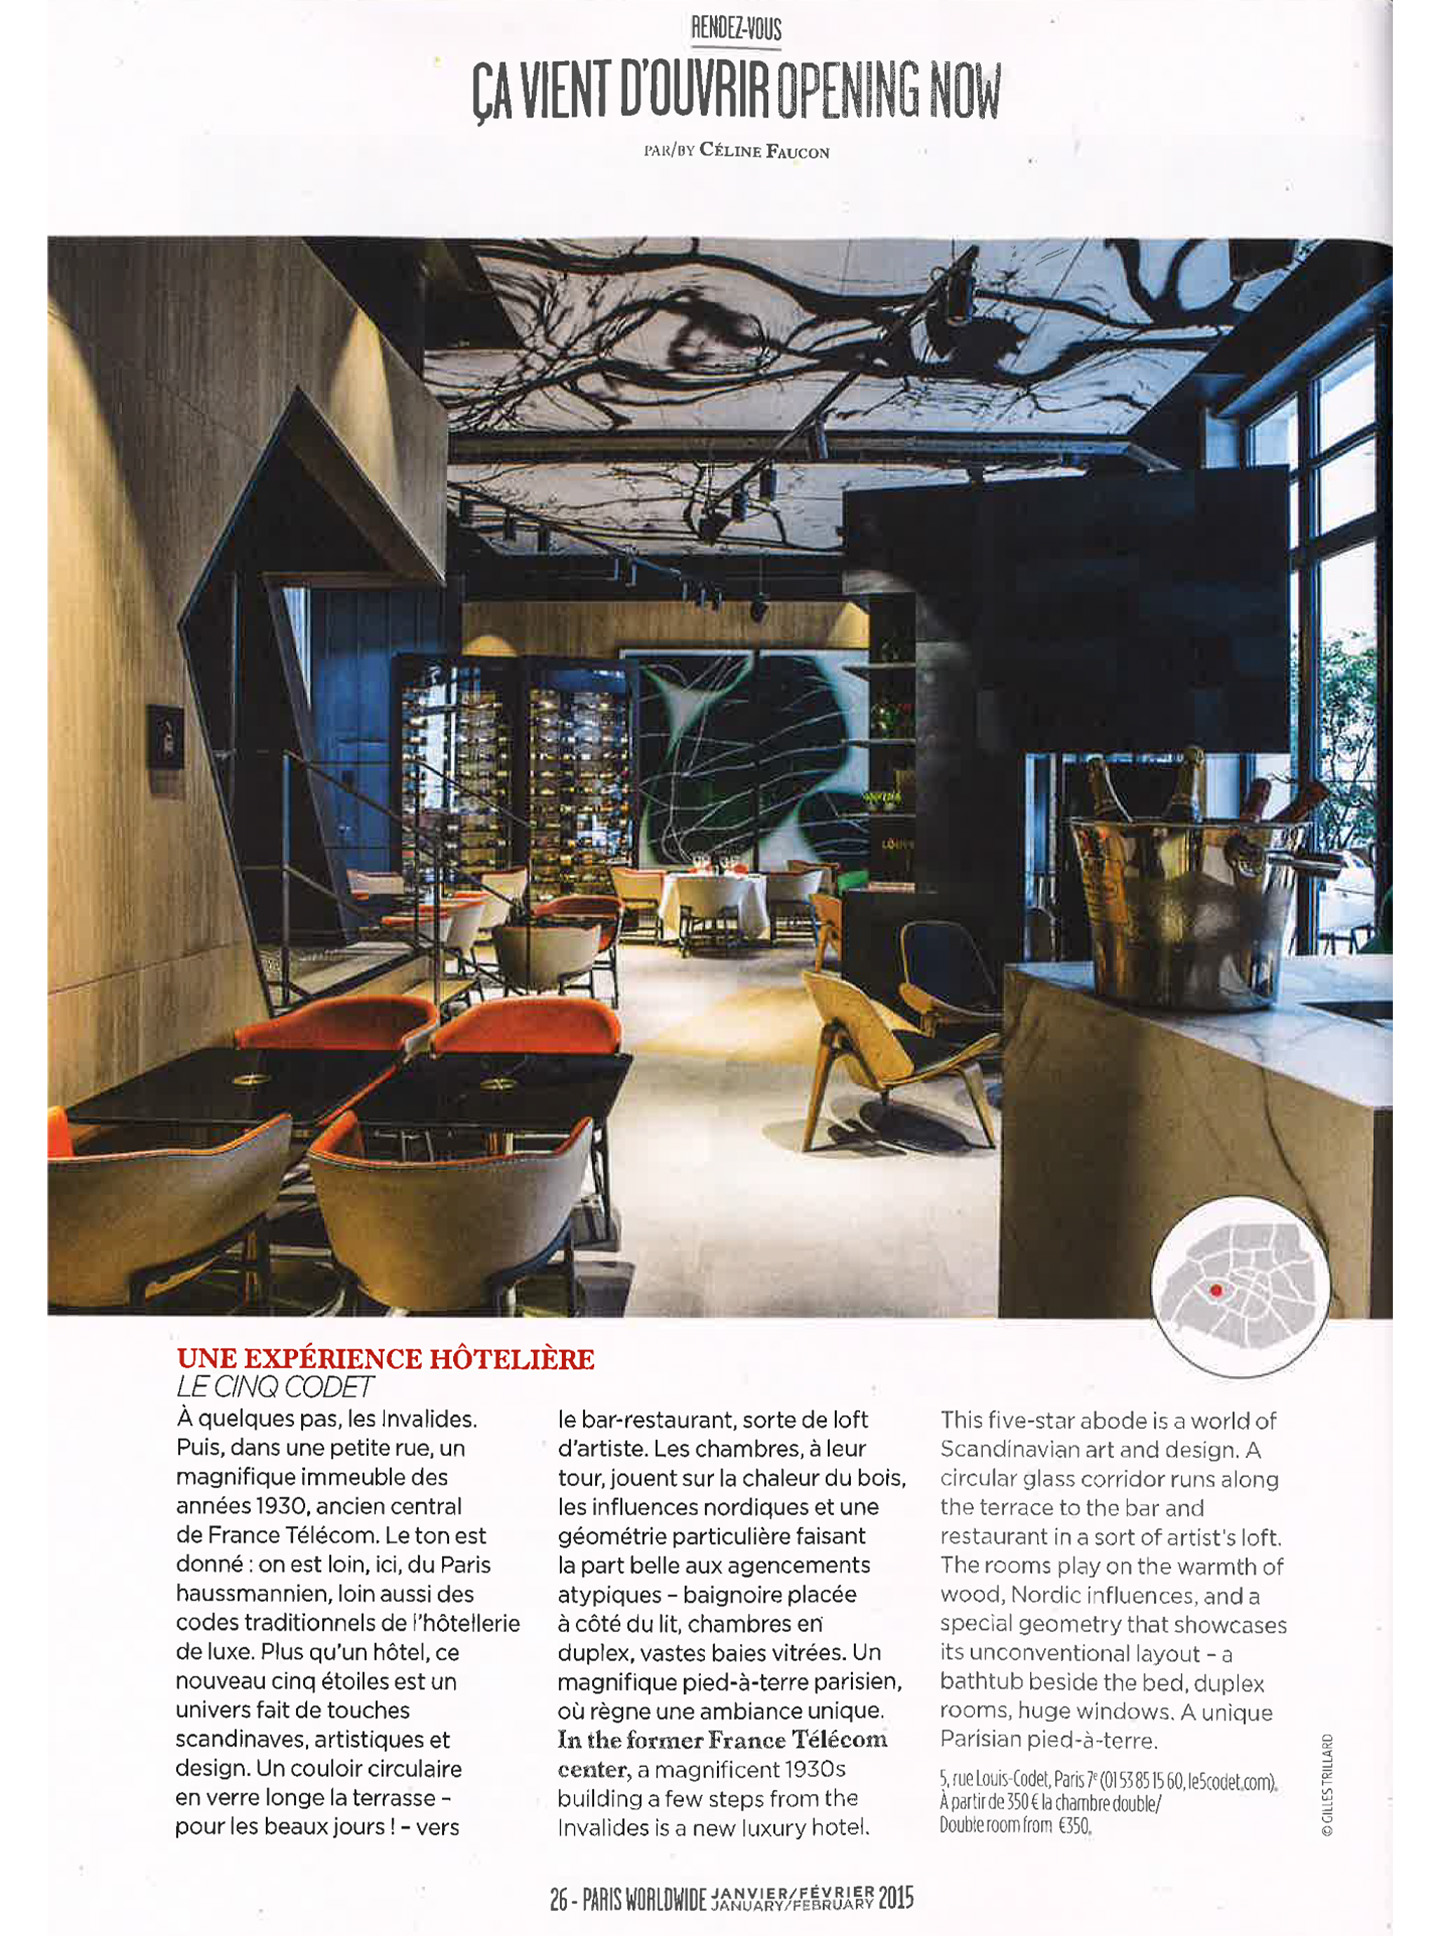 article sur le cinq codet, hotel de luxe parisien 5 étoiles réalisé par le studio d'architecture d'intérieur jean-philippe nuel